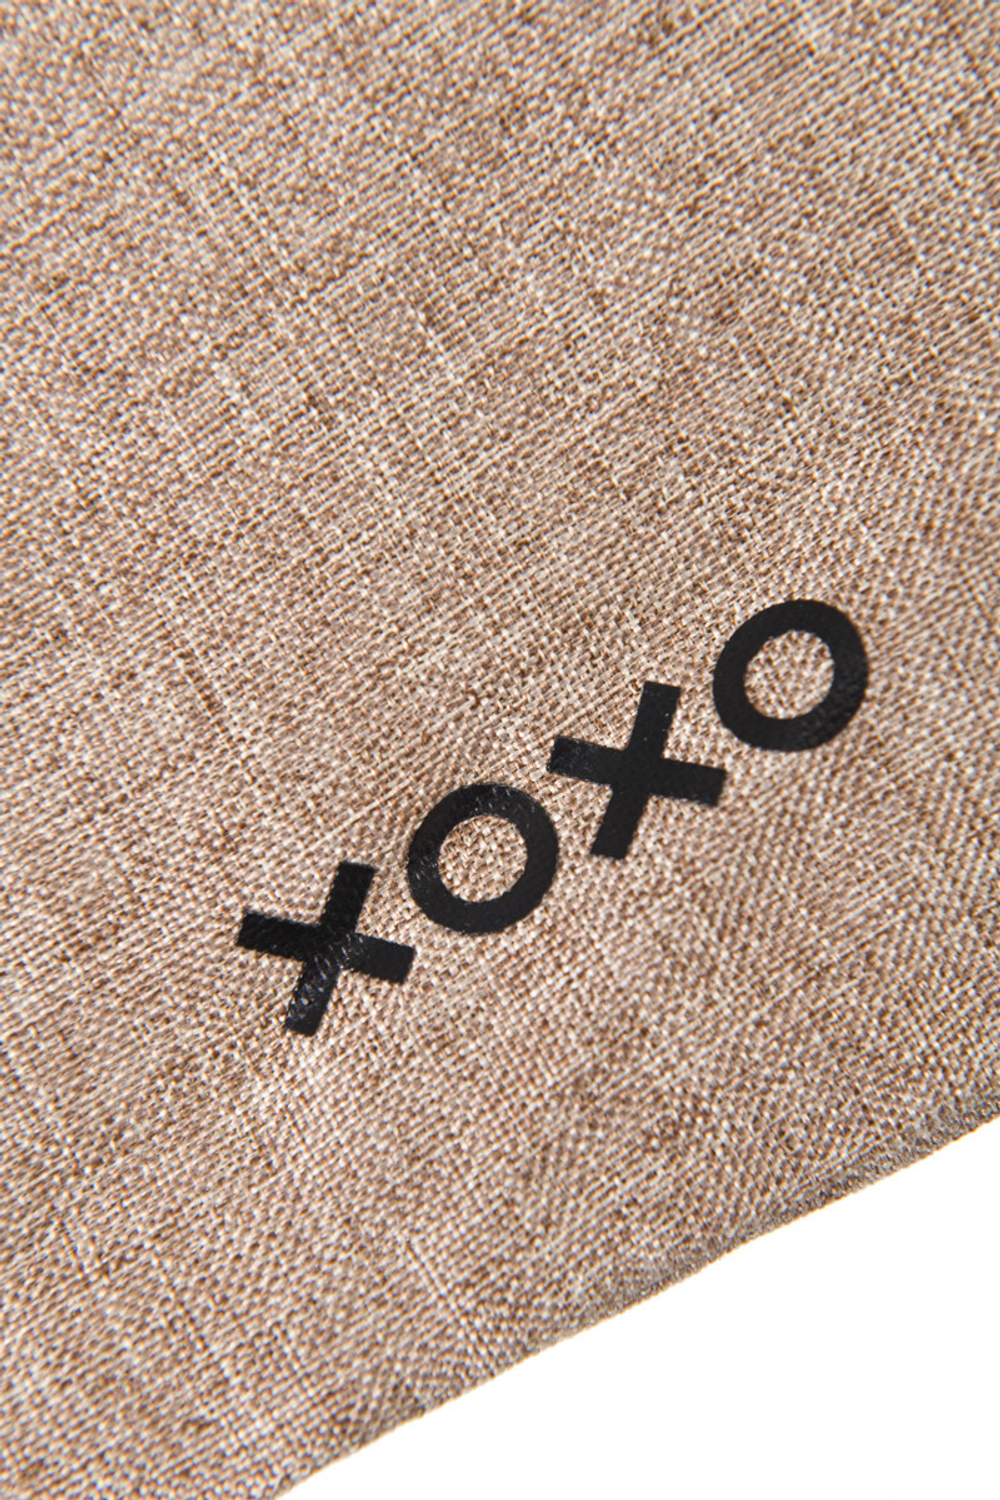 Мешочек XOXO, текстиль, коричневый, 39*23,5 см